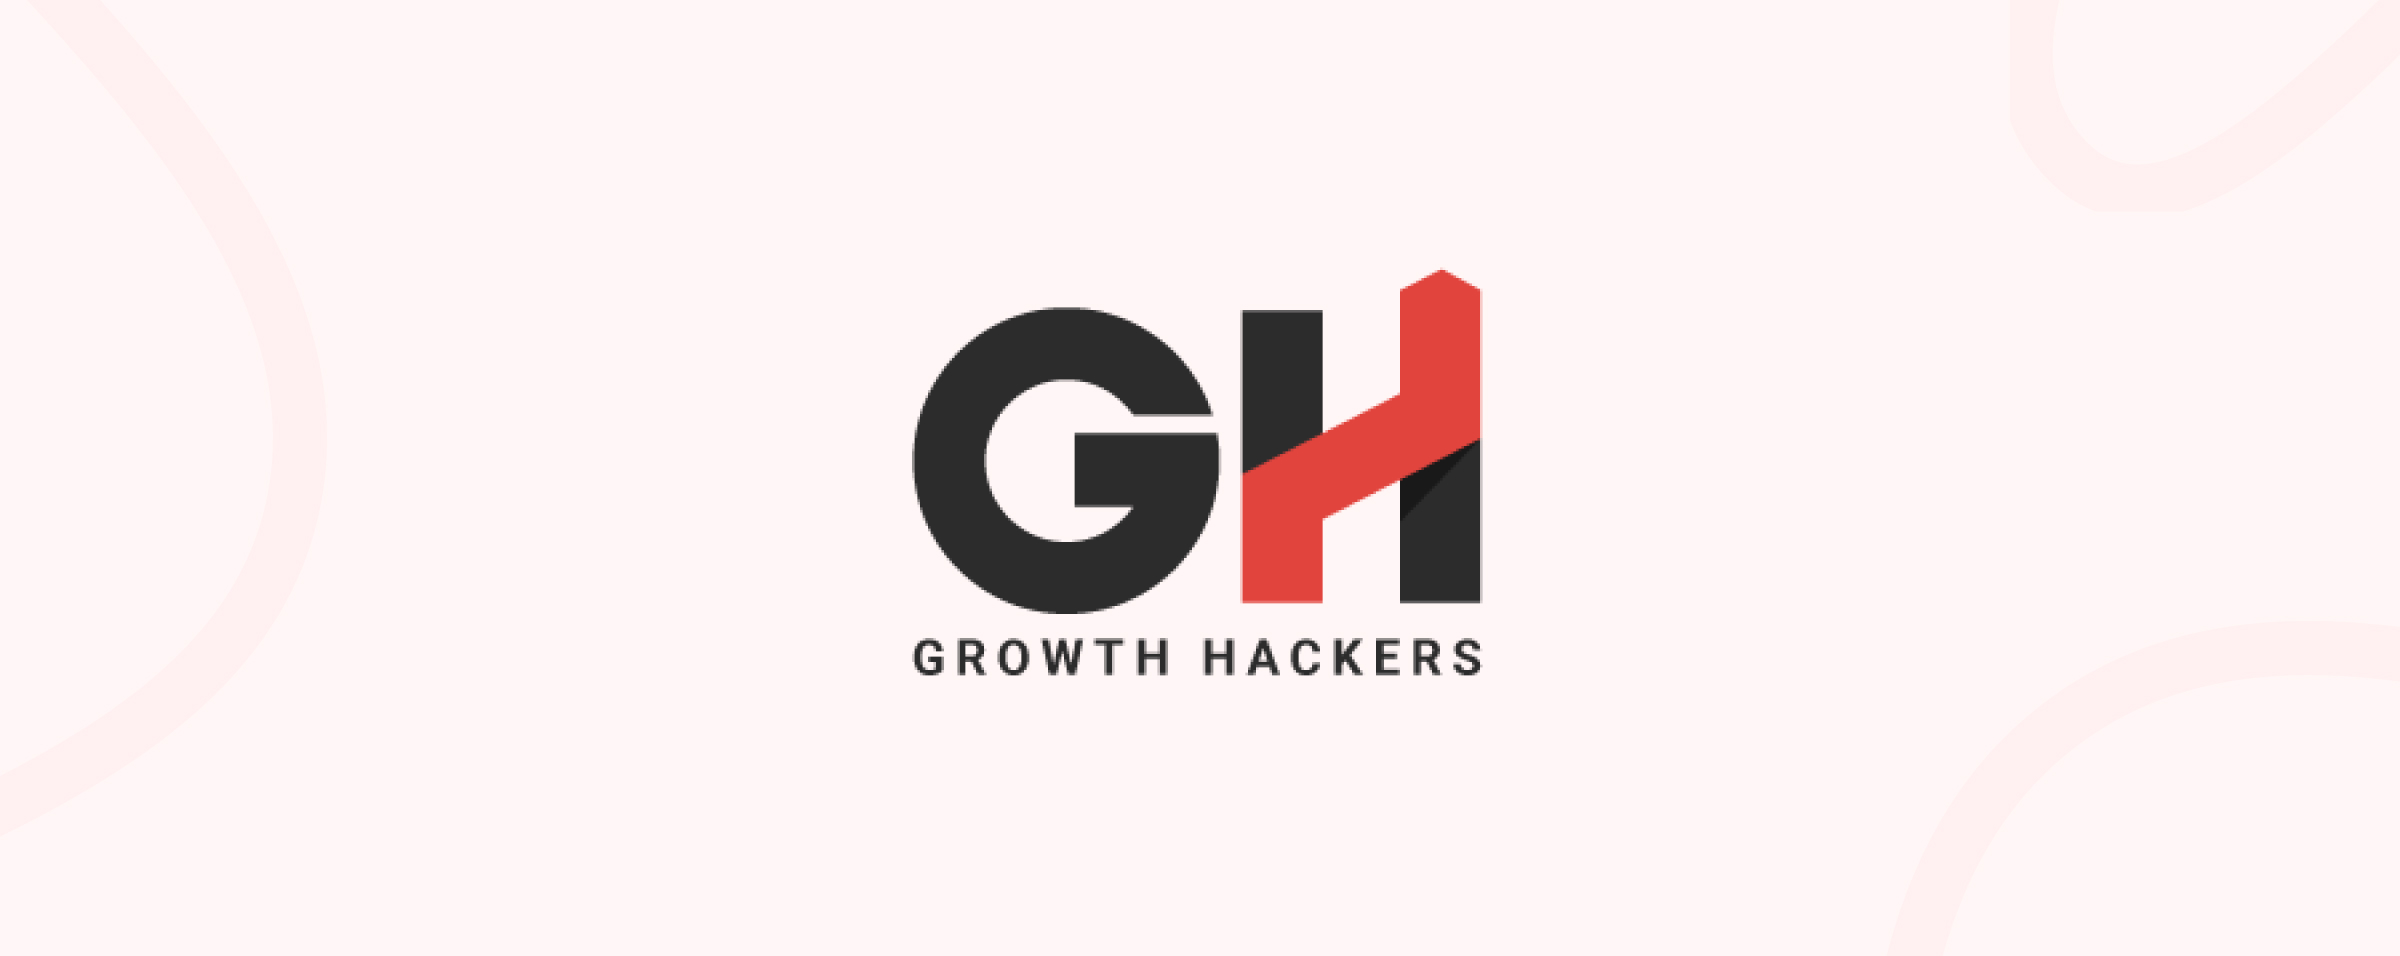 Growth Hackers Digital